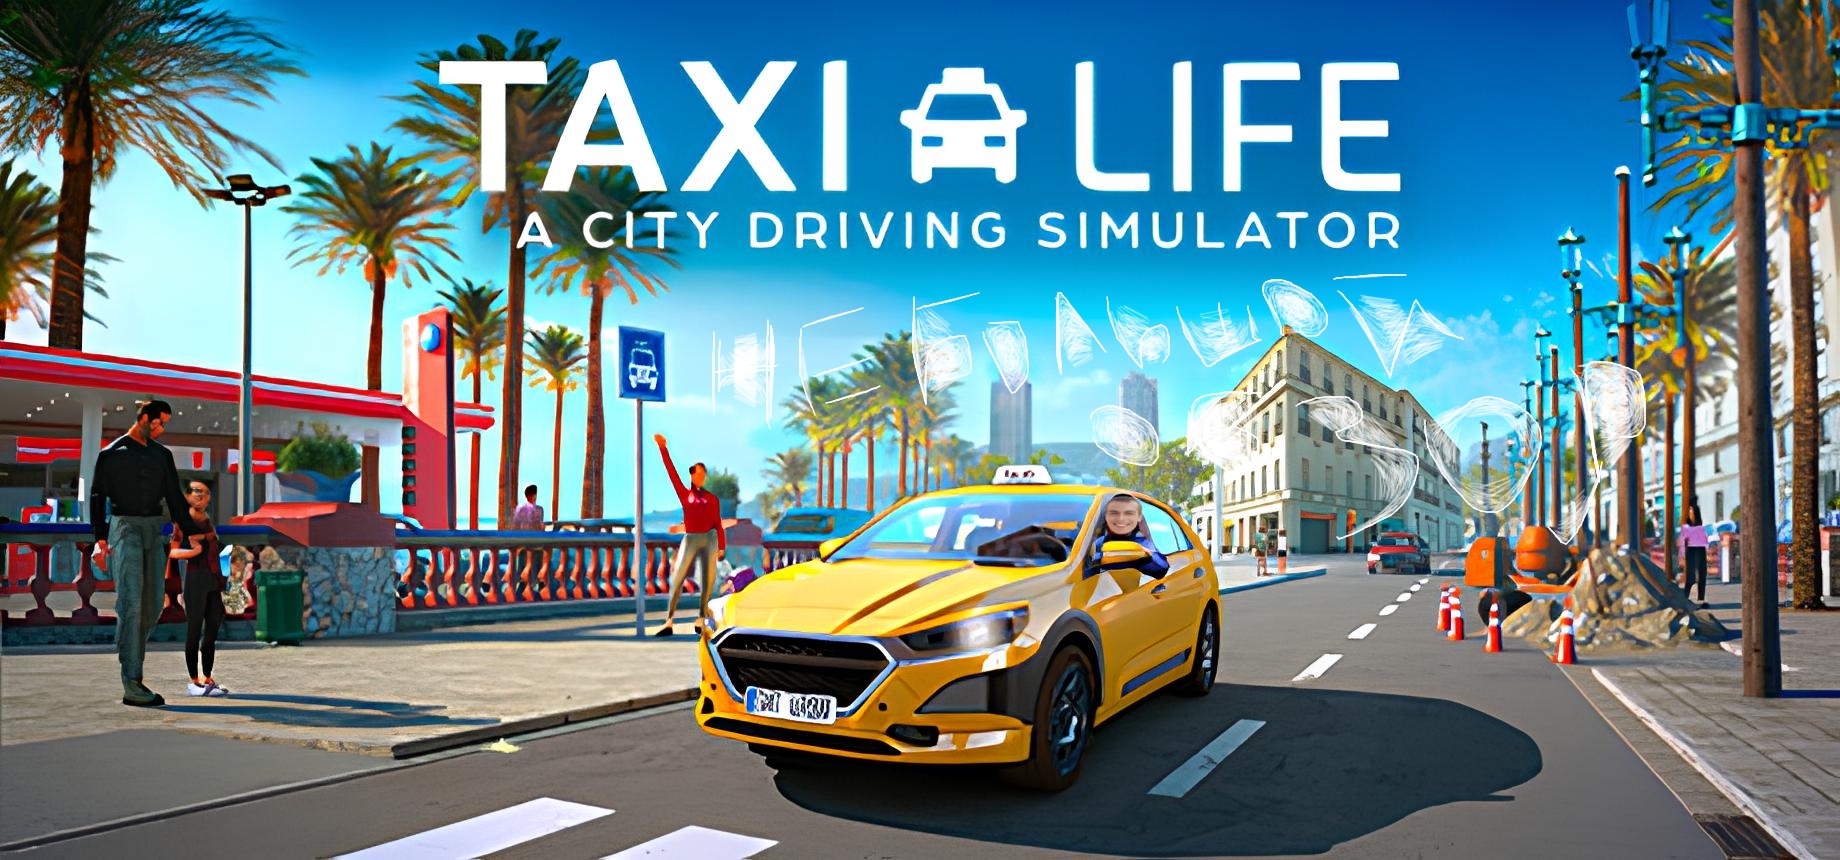 Устроился в Такси на пол ставки / Taxi Life: A City Driving Simulator Обзор